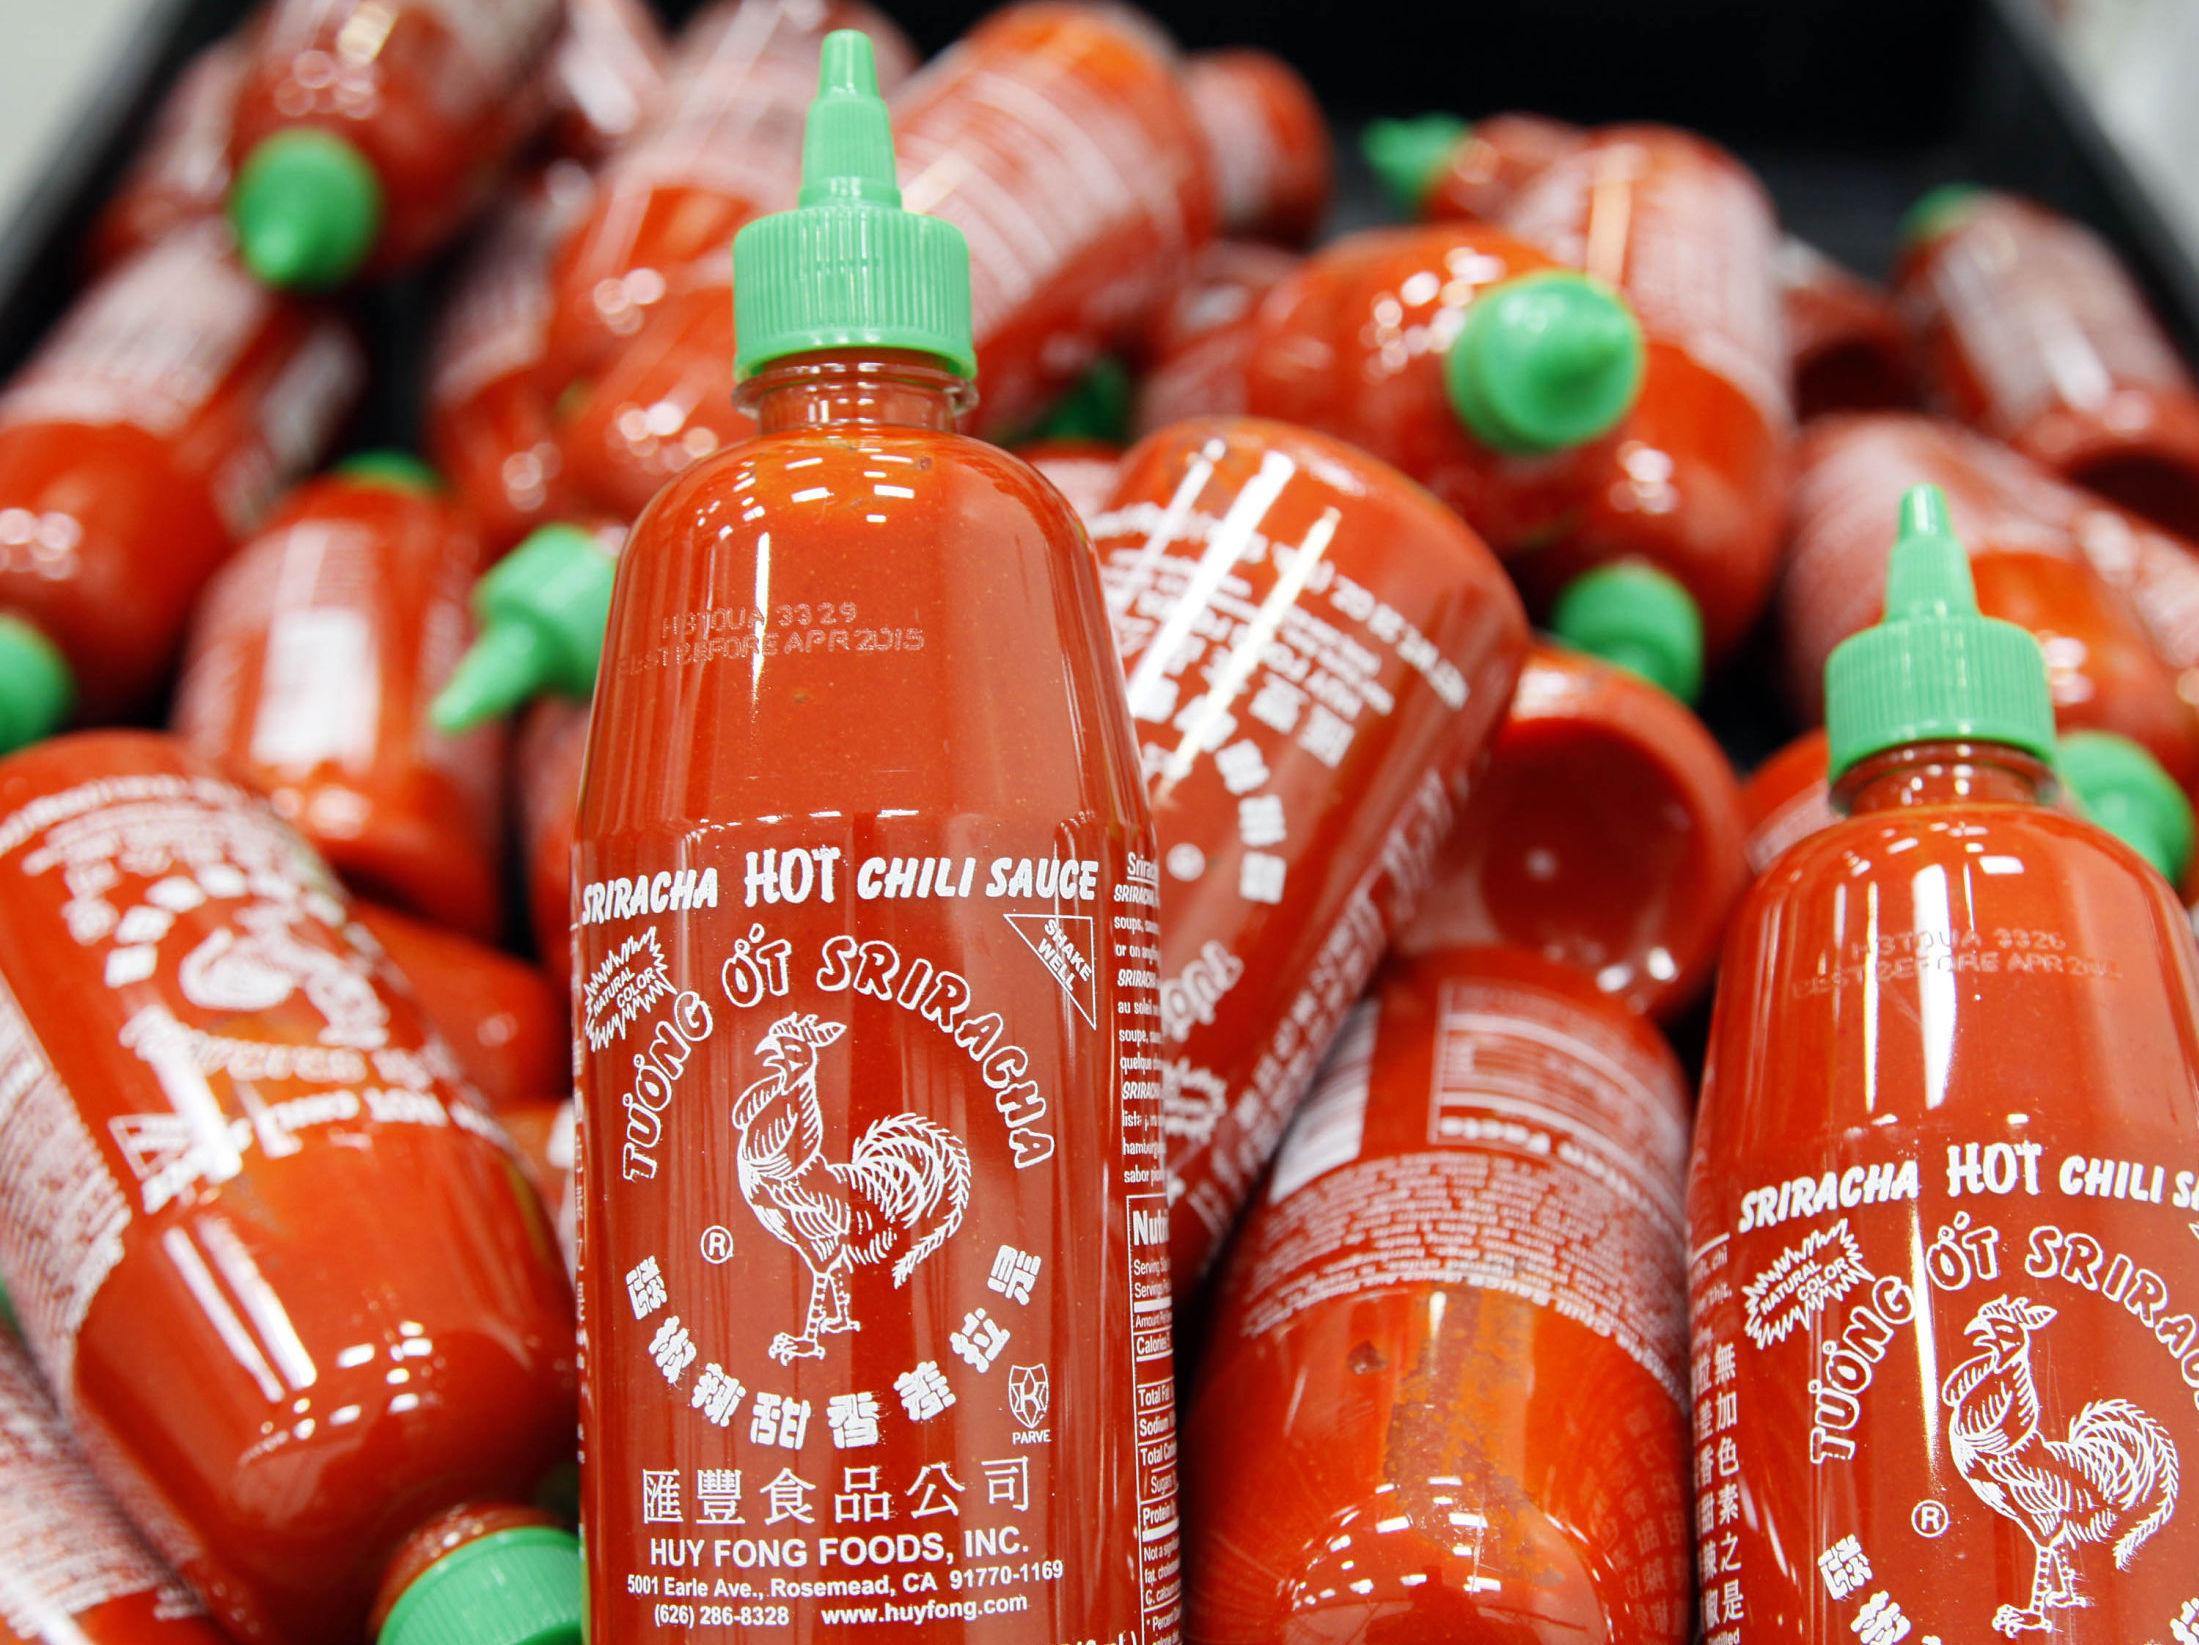 TRENDY HOT SAUS: Sriracha-saus er laget av sol-modnet chili som er malt til en glatt pasta sammen med hvitløk og pakket i en praktisk spruteflaske. Foto: AP Photo